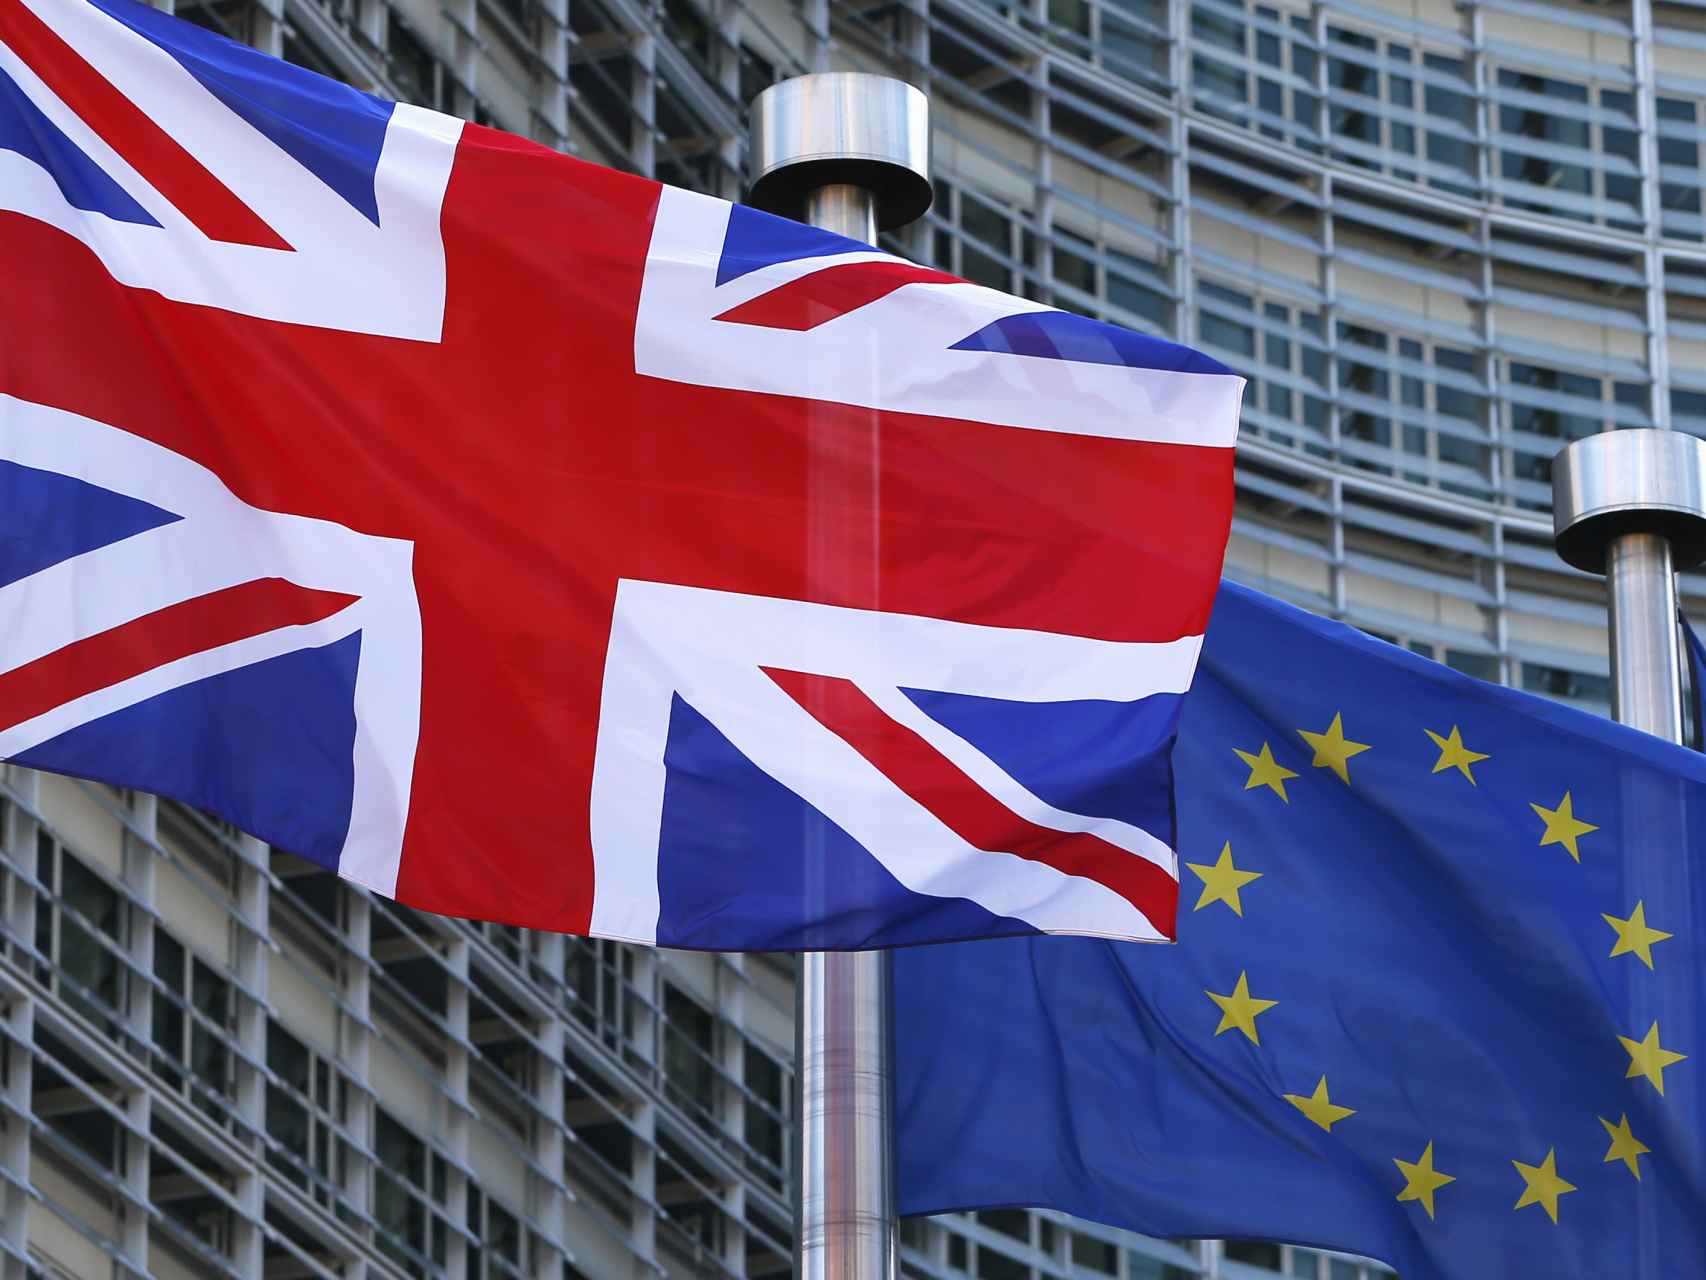 Las banderas de Reino Unido y la UE ondean frente a la sede de la Comisión